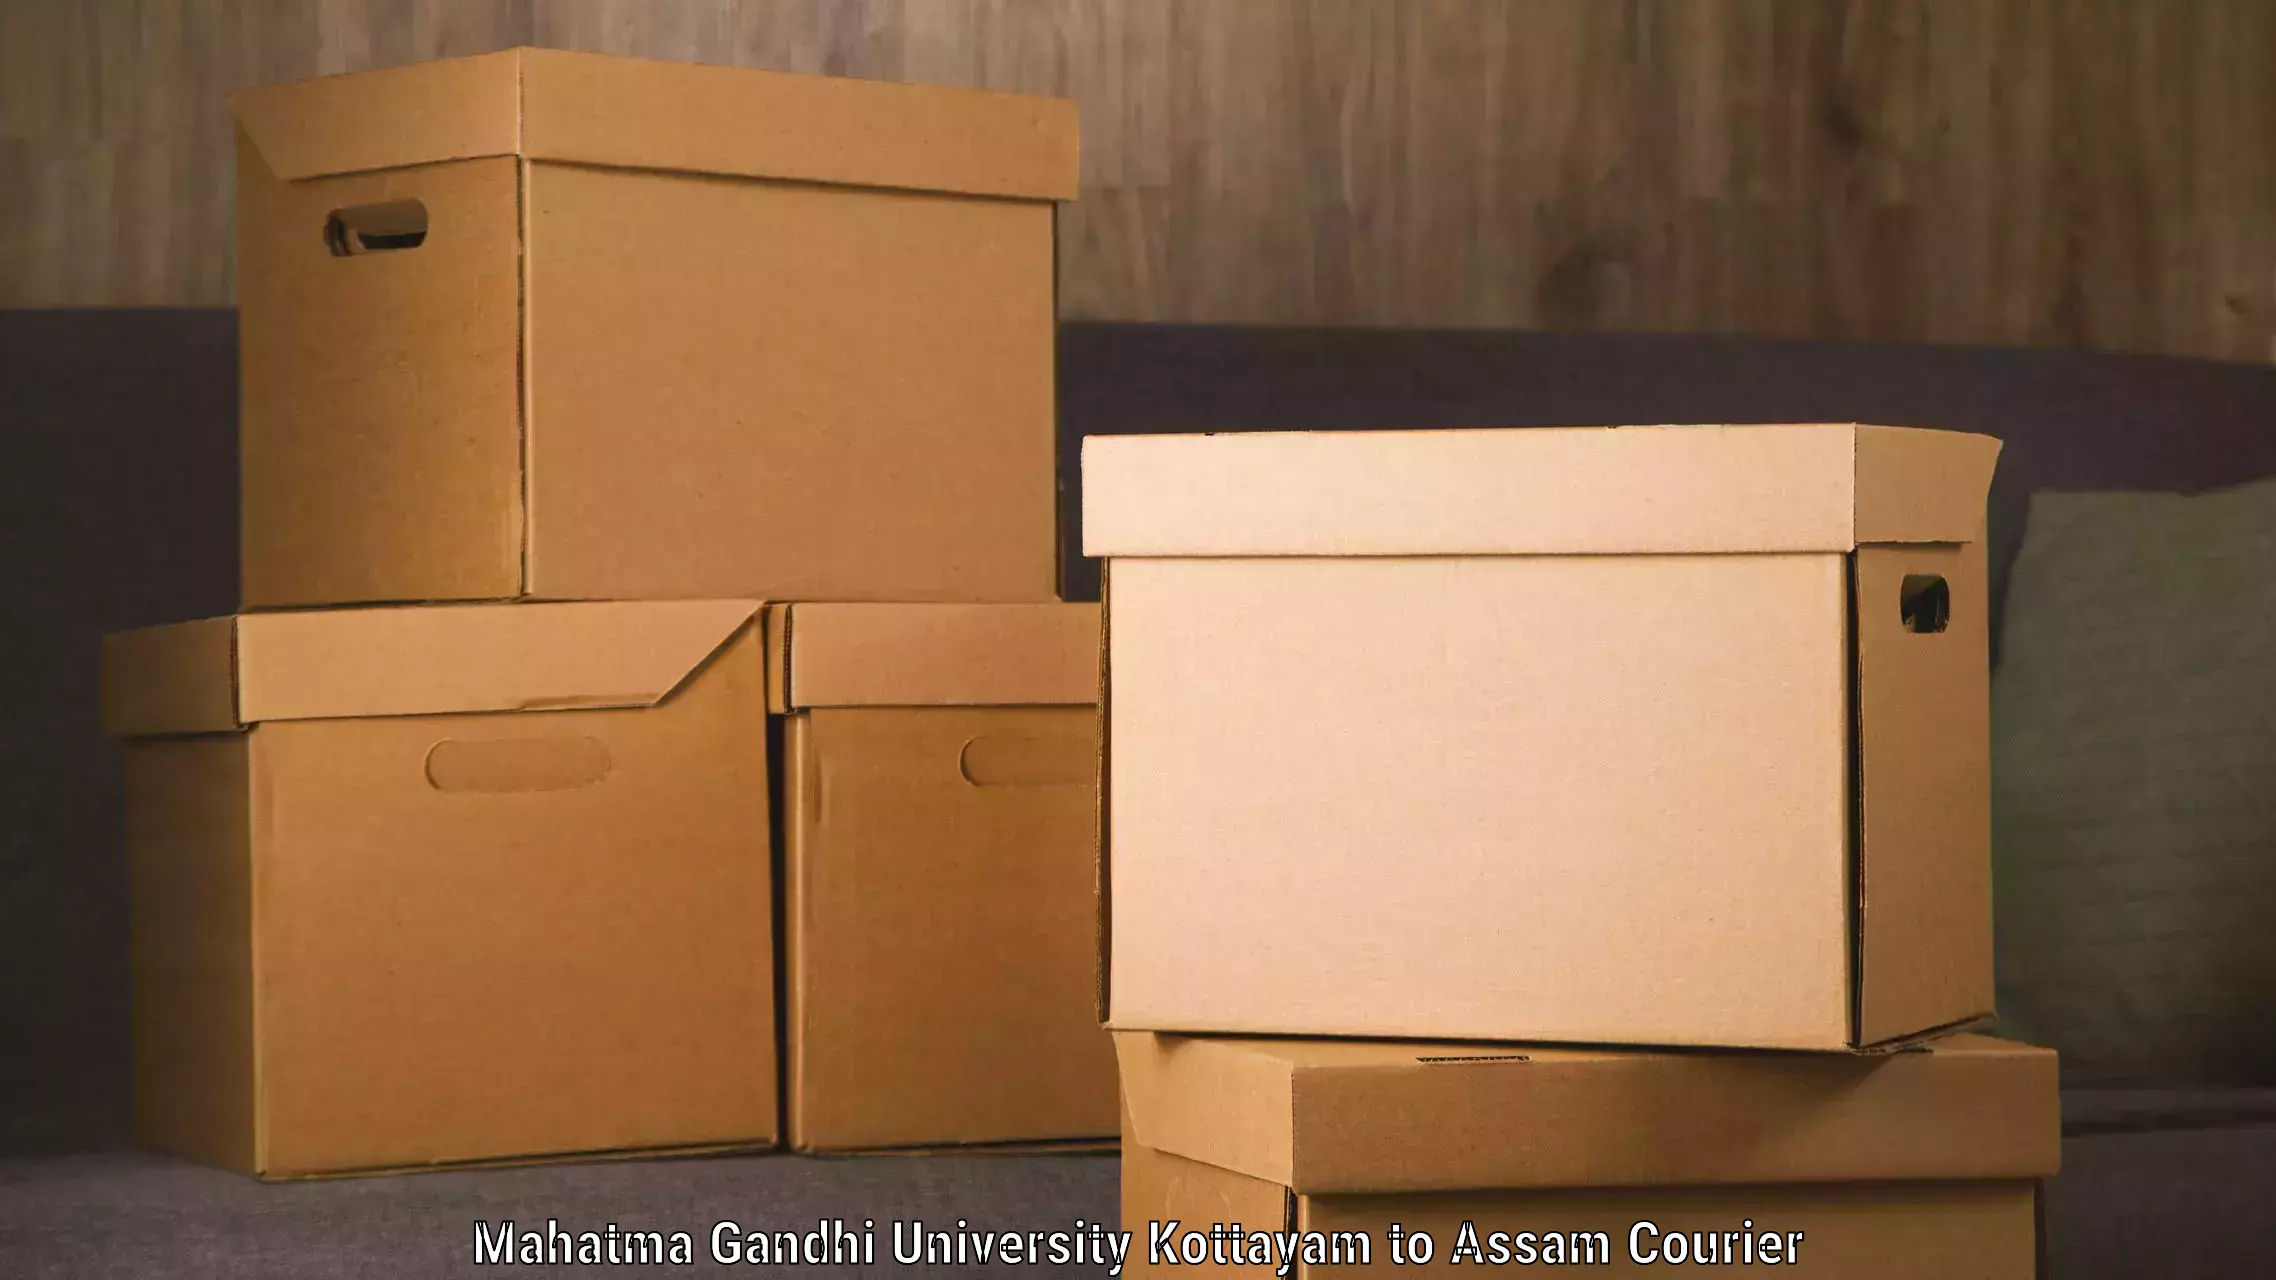 Automated parcel services Mahatma Gandhi University Kottayam to Kusumtola